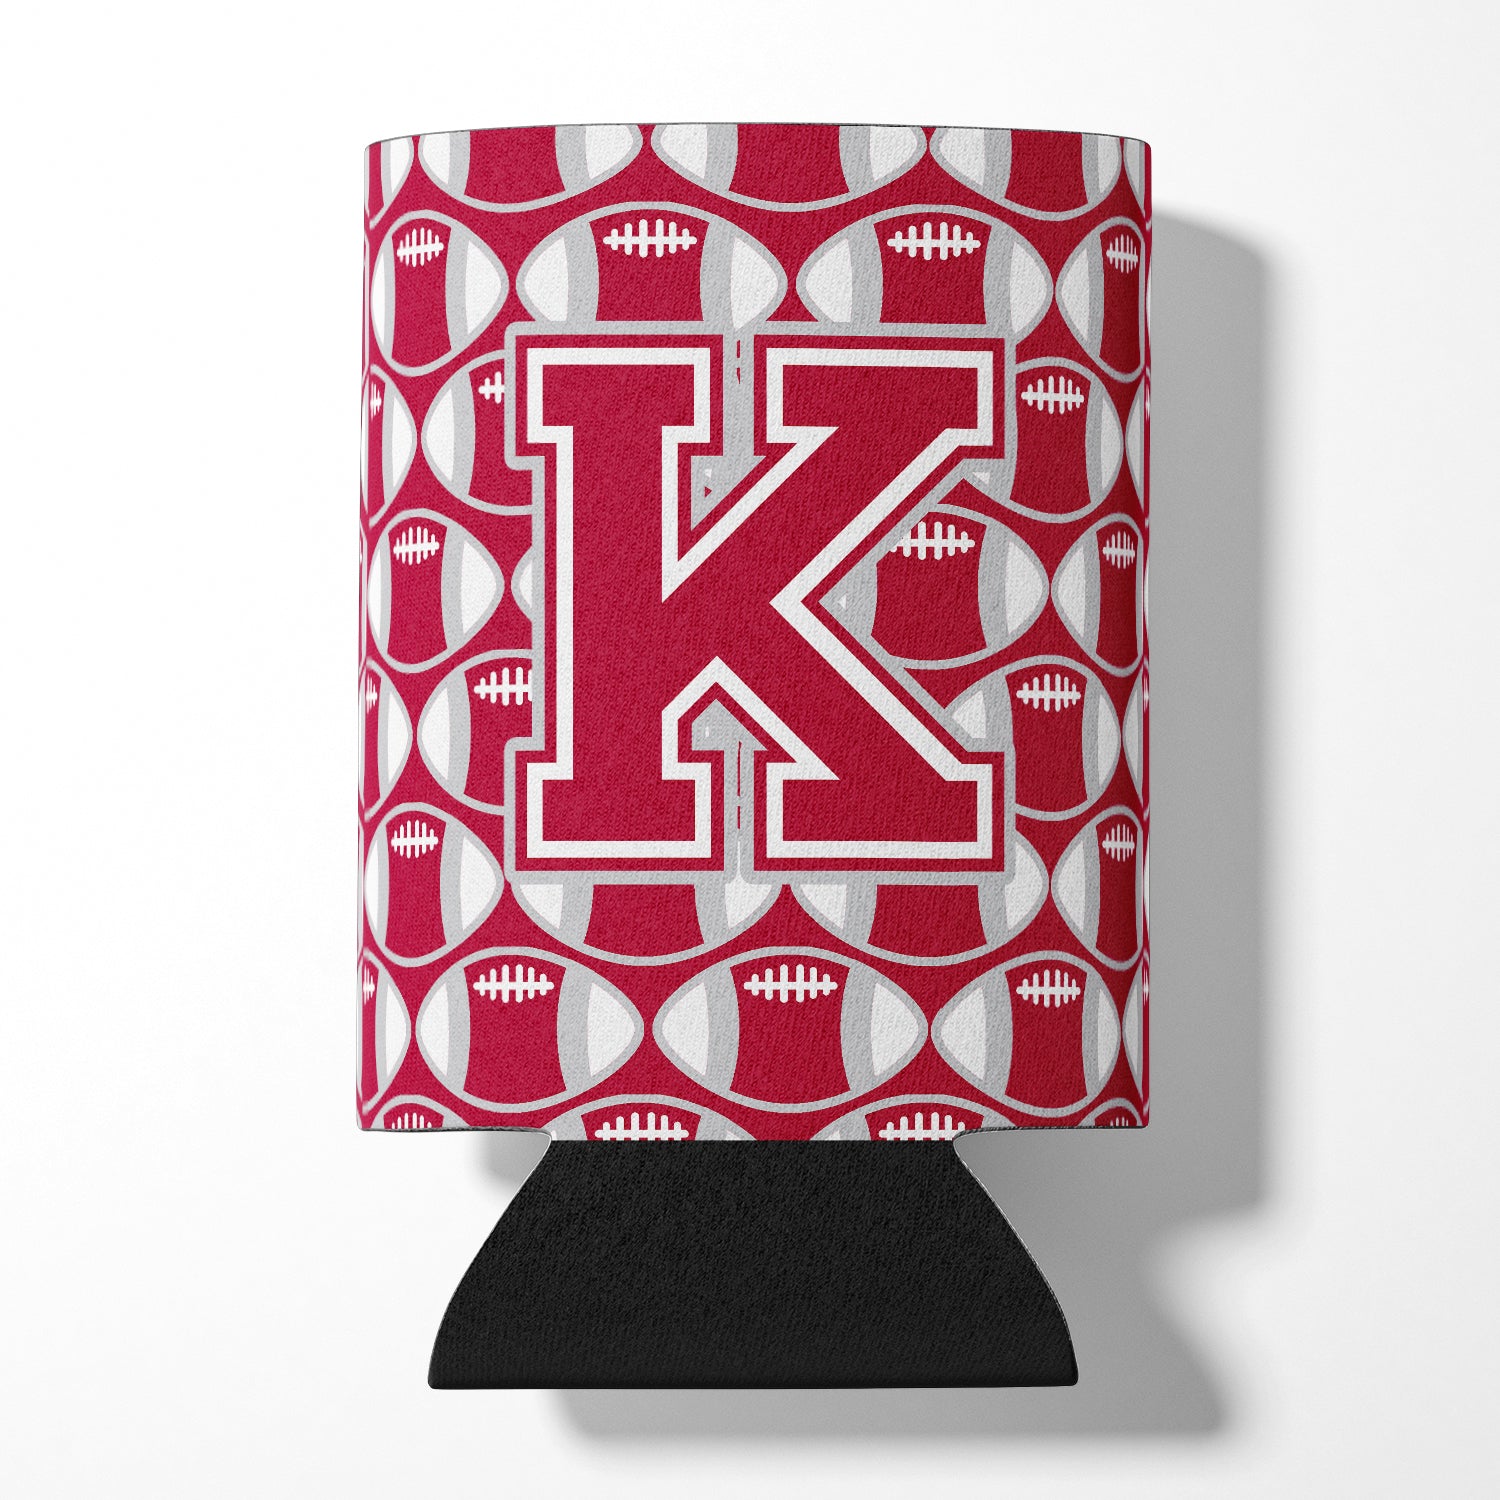 Letter K Football Crimson, grey and white Can or Bottle Hugger CJ1065-KCC